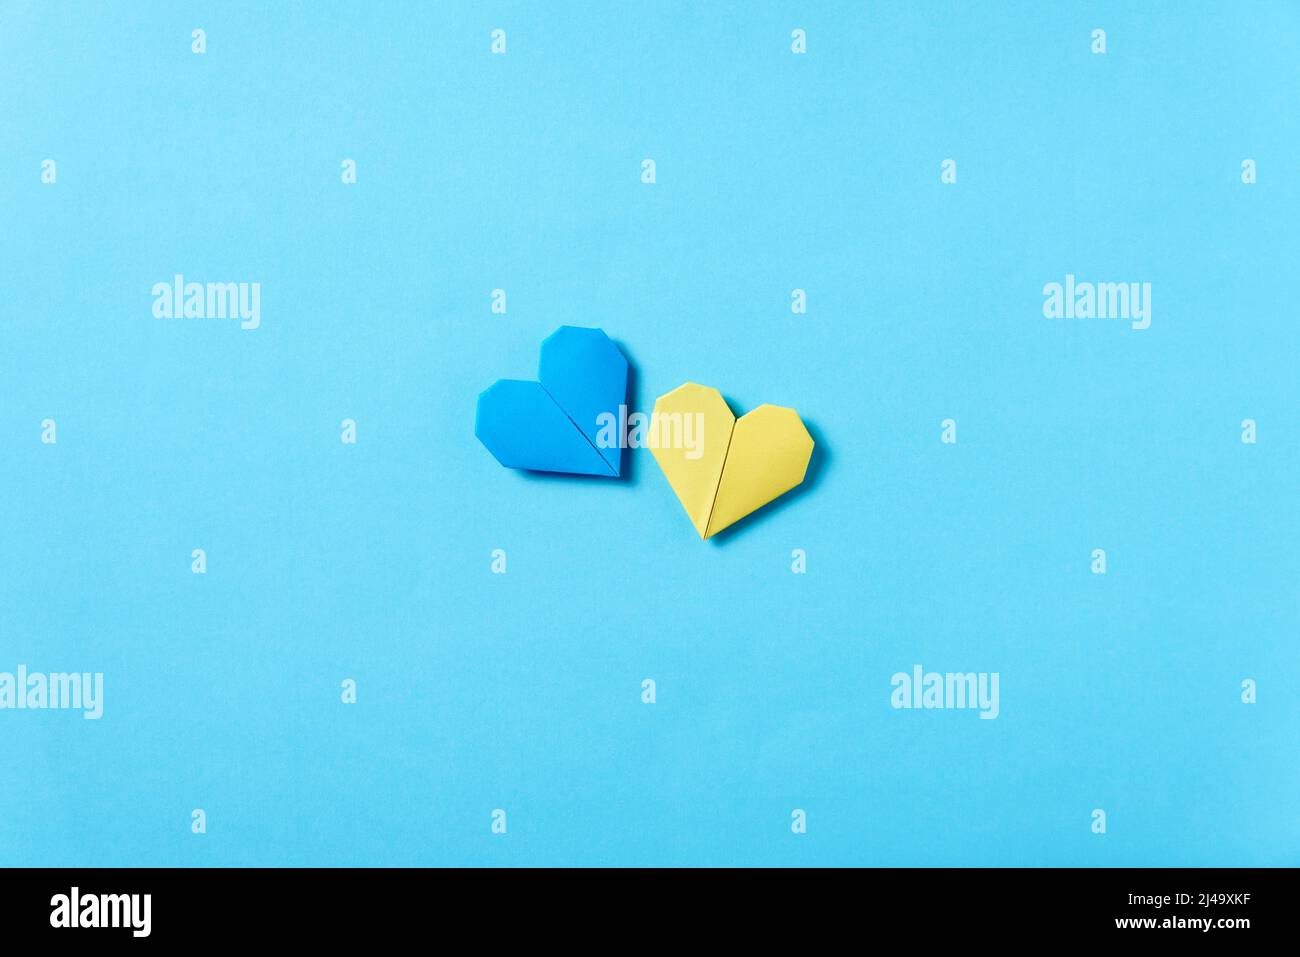 Cuori di origami blu e giallo, colori della bandiera Ucraina. Immagine simbolica concettuale a sostegno di questo paese durante l'invasione militare russa Foto Stock